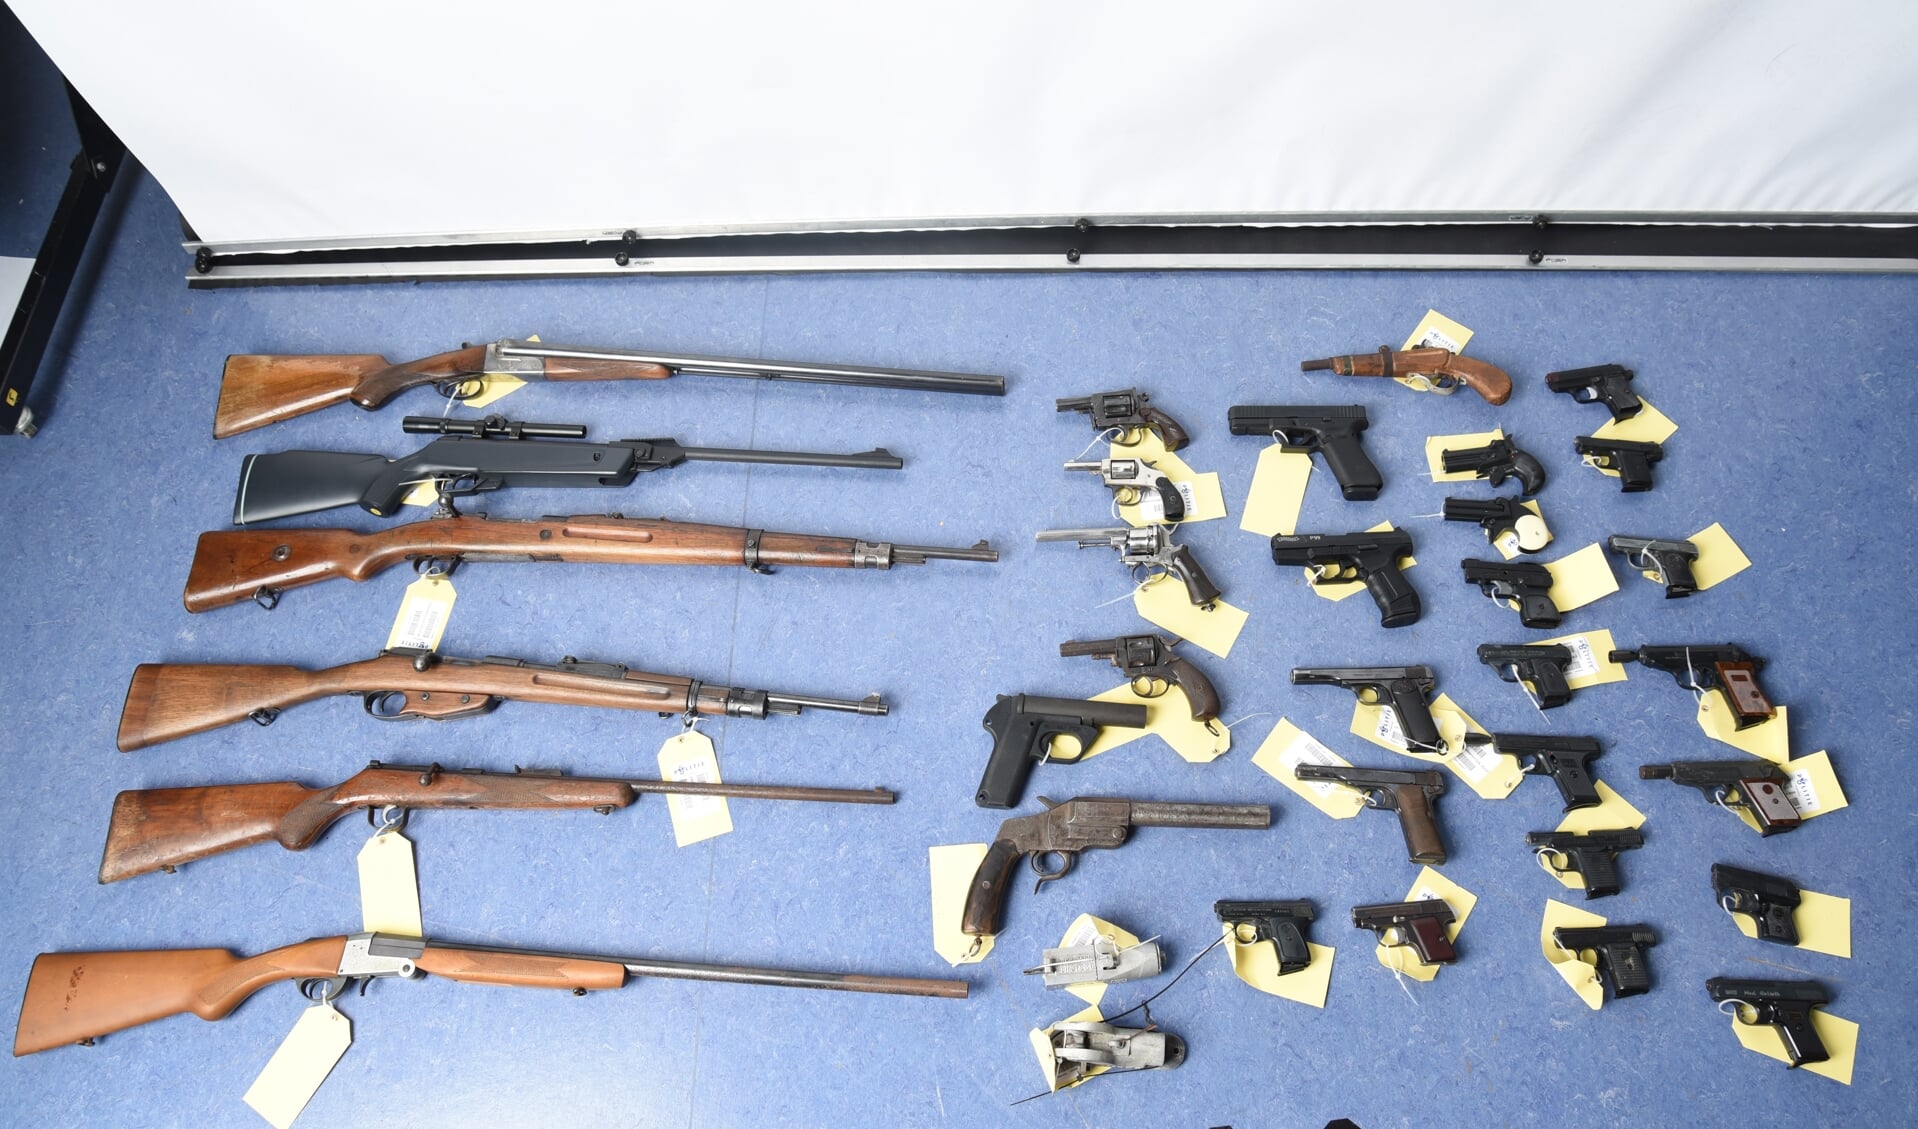 De vuurwapens, nep-vuurwapens en stroomstootwapens die tijdens de actie ingeleverd werden.